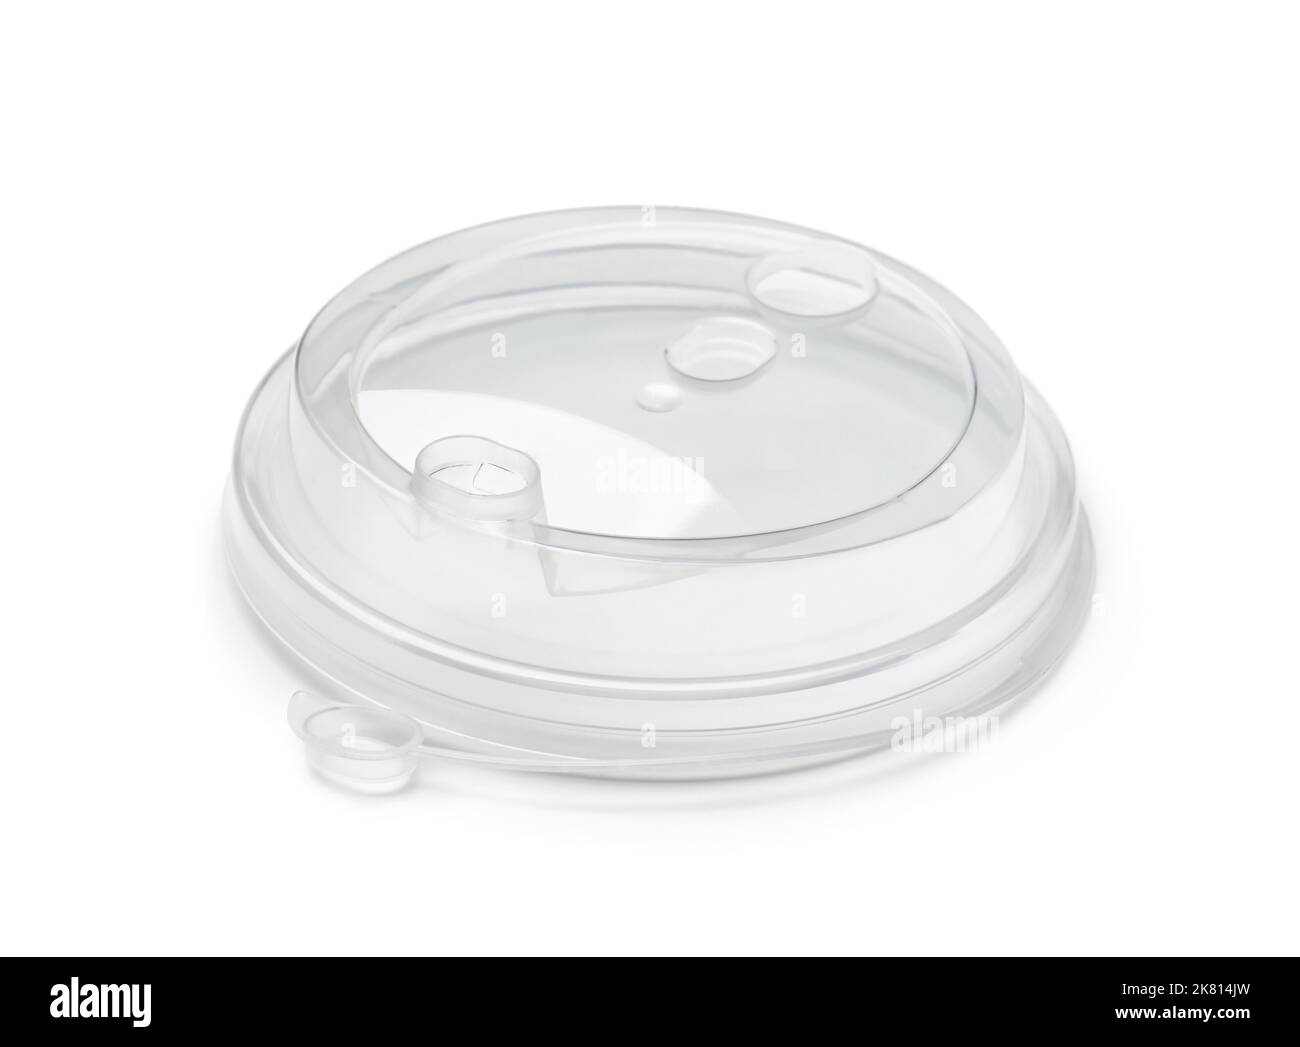 Tapa de café desechable de plástico transparente redonda aislada sobre blanco Foto de stock